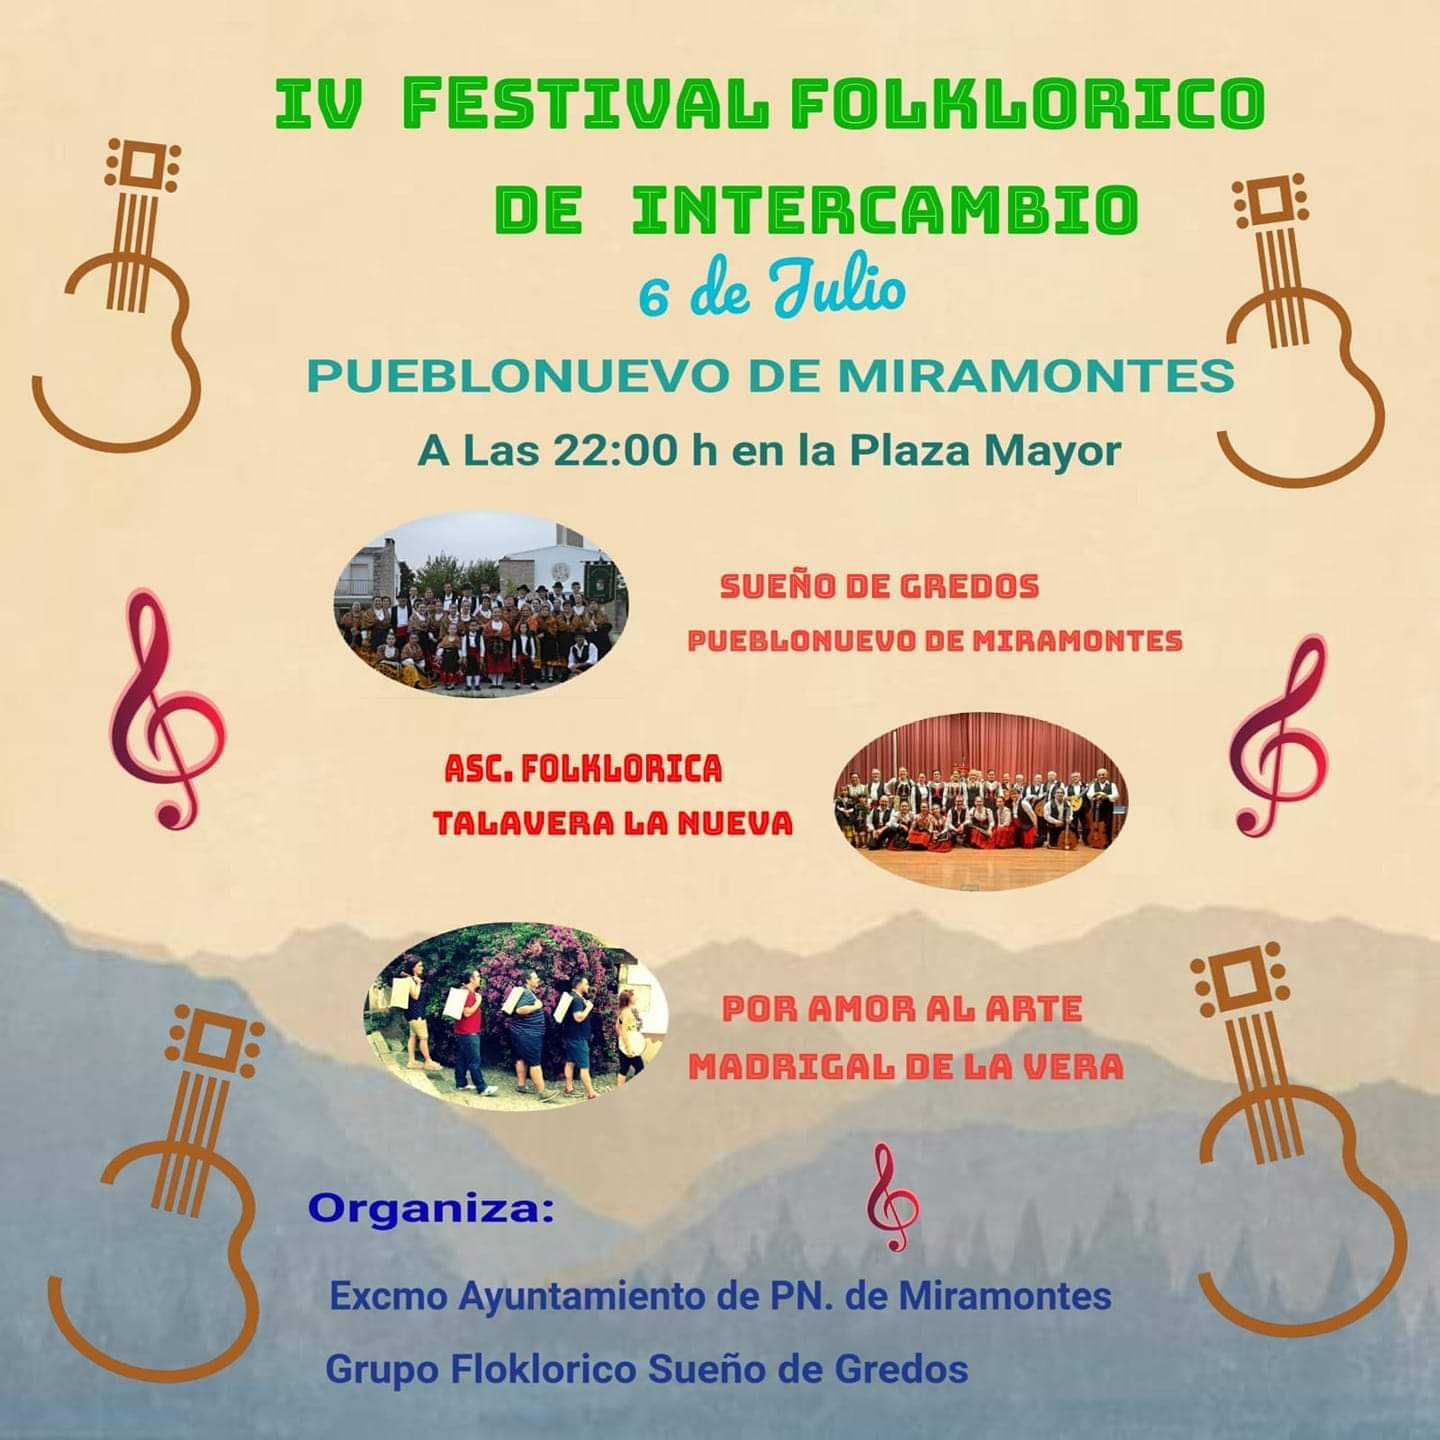 IV Festival folklórico de intercambio - Pueblonuevo de Miramontes (Cáceres)